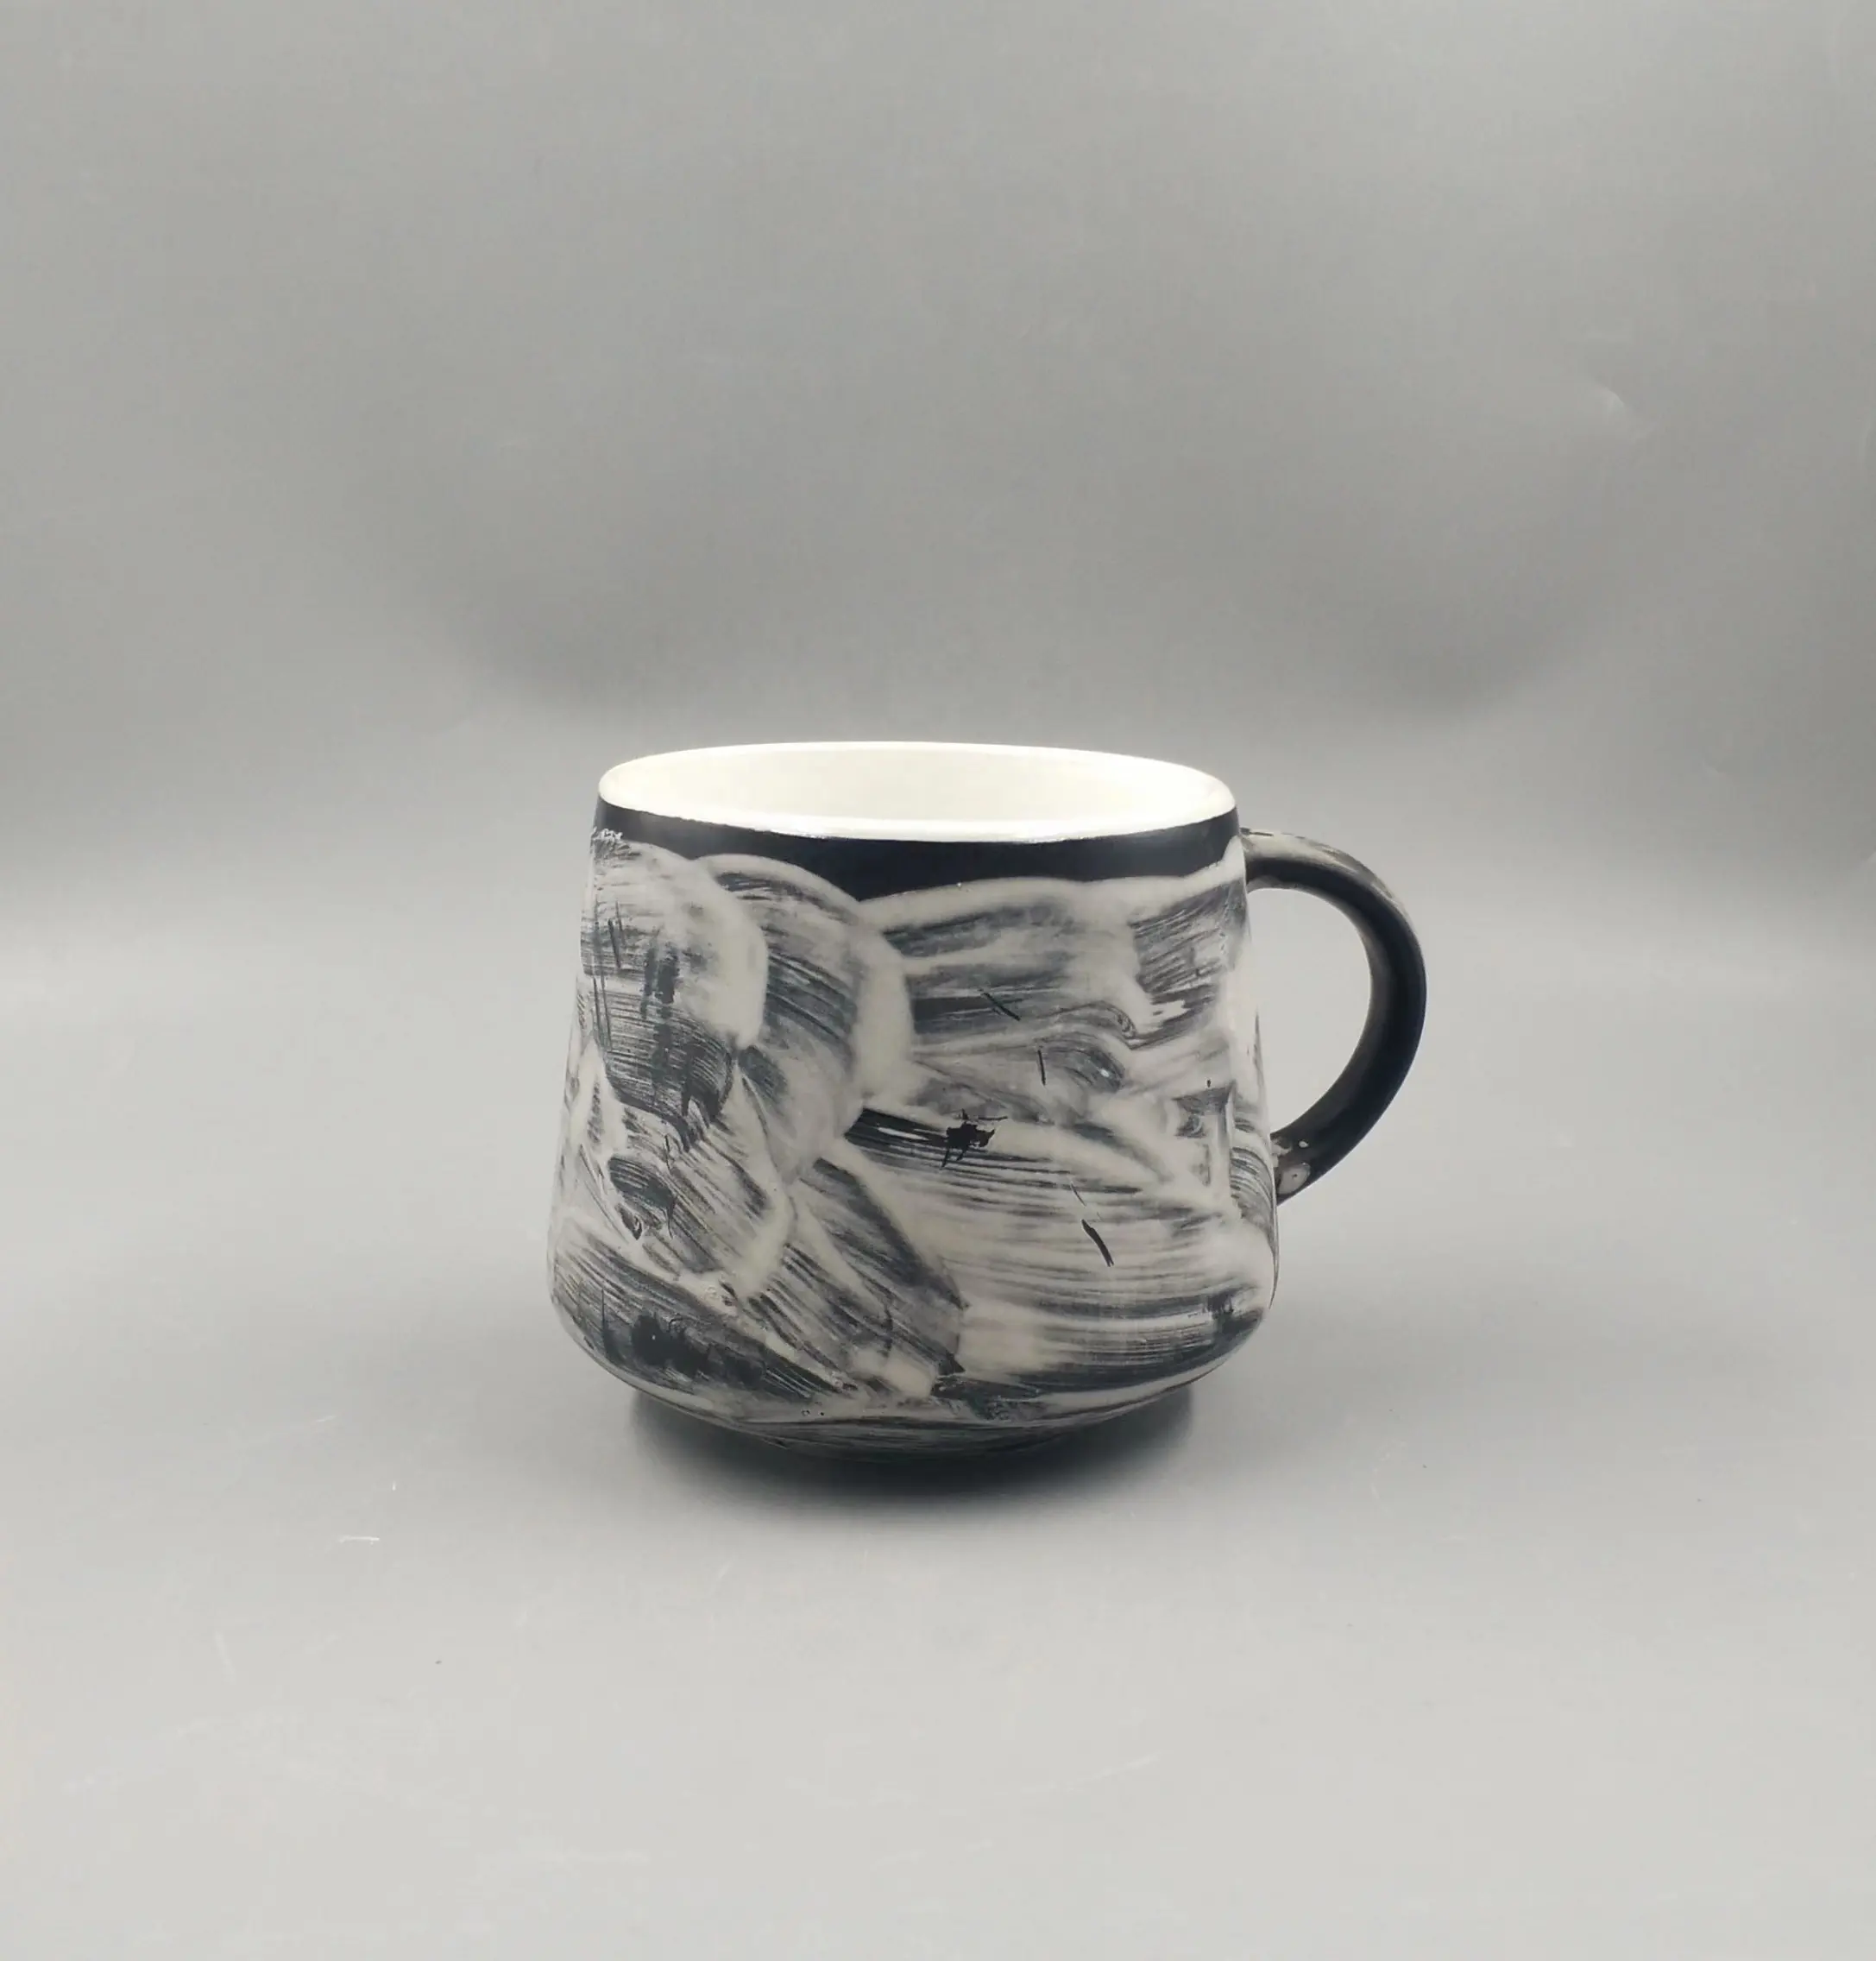 Desain baru mug keramik/mug porselen